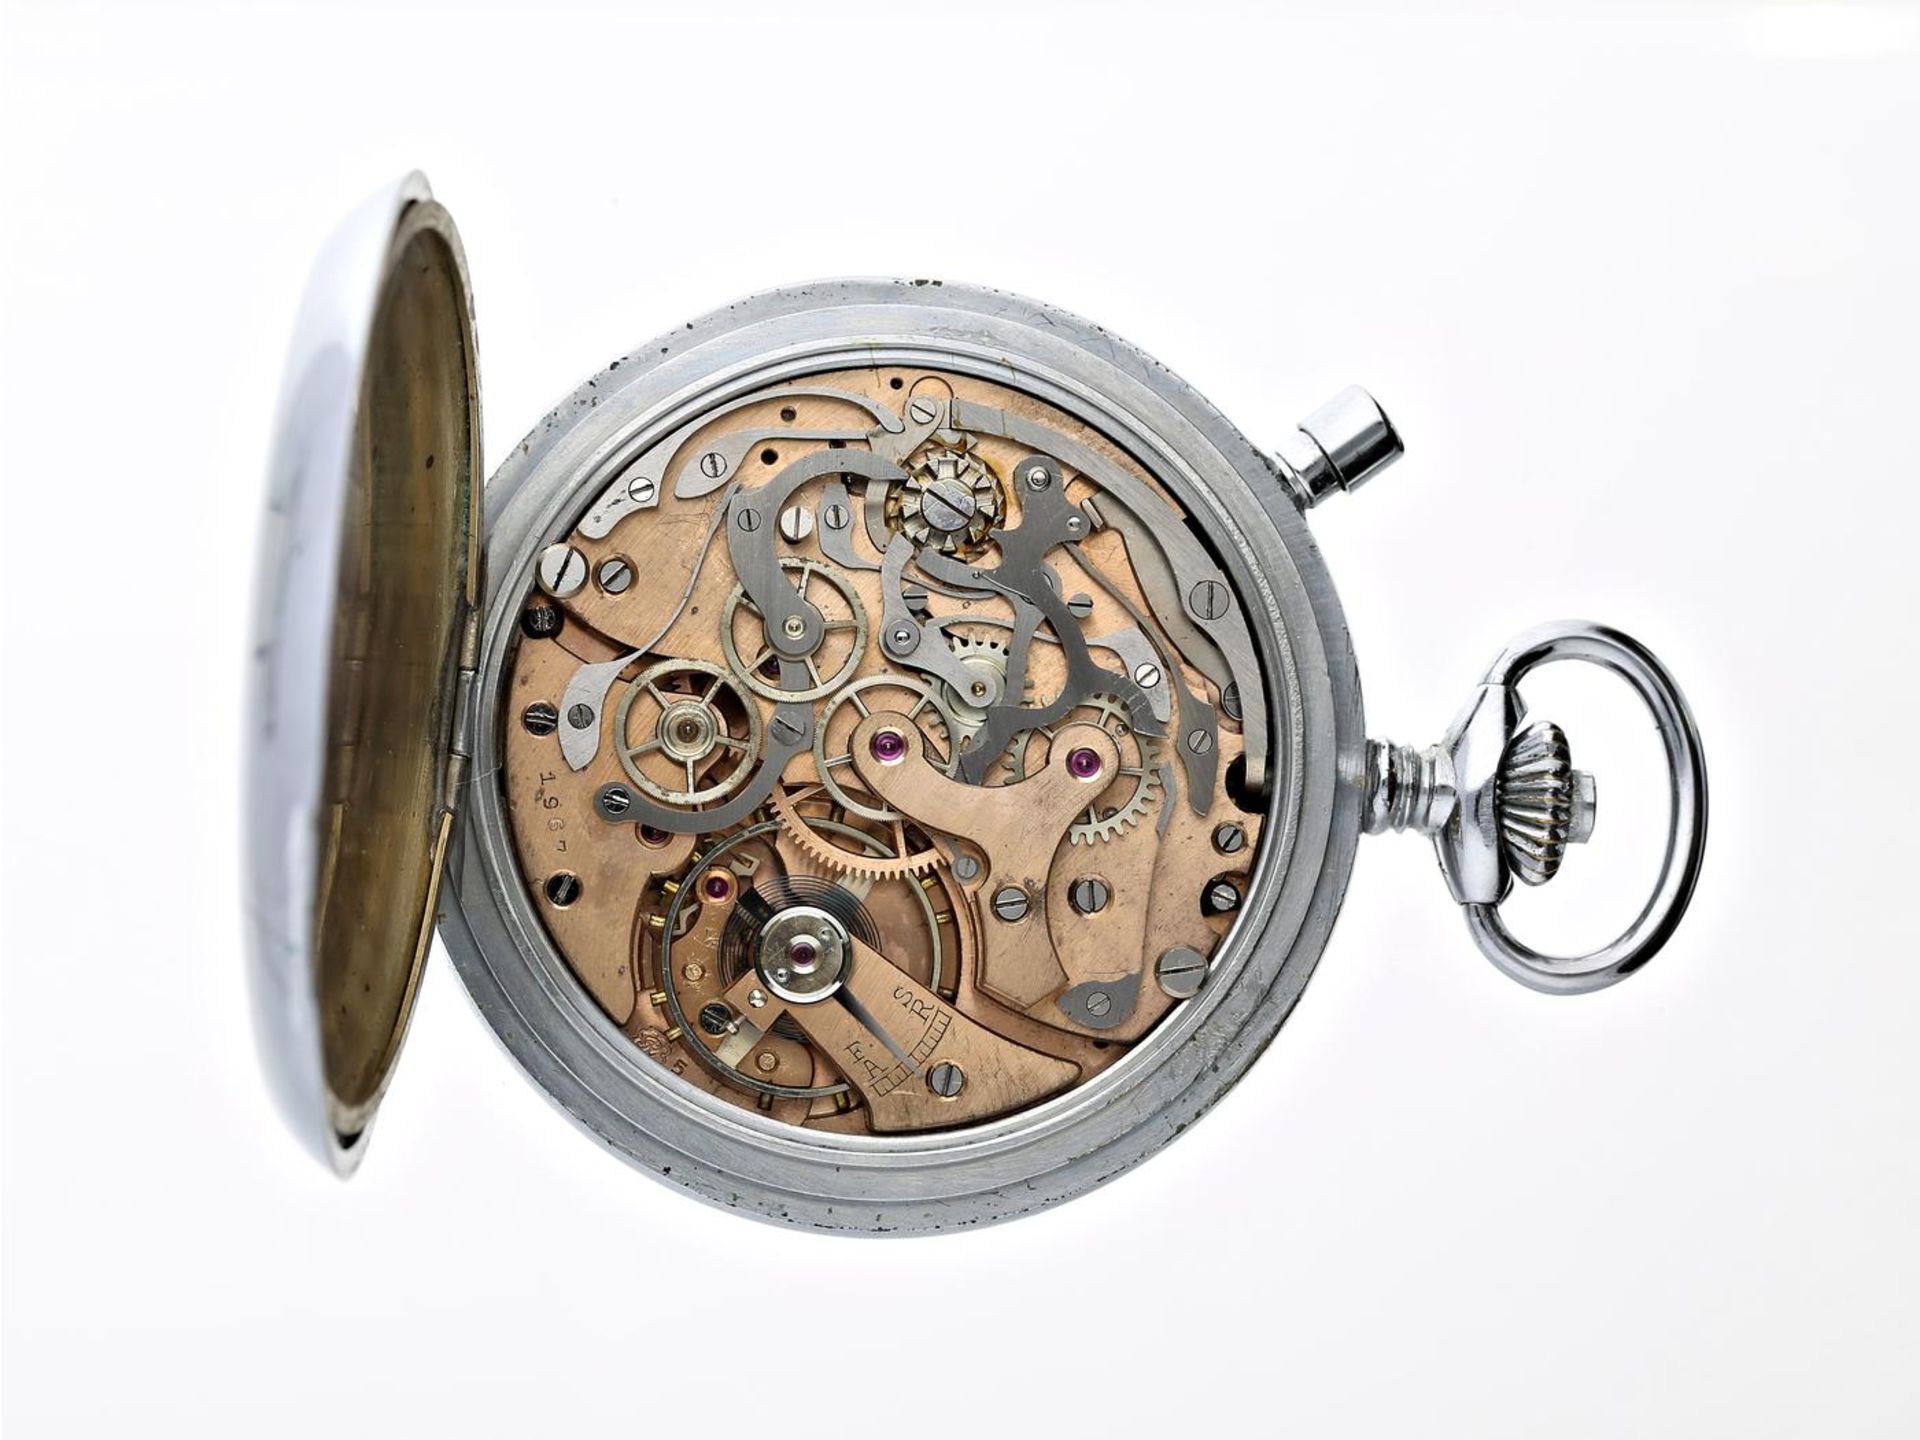 Taschenuhr: feiner Taschen-Chronograph, vermutlich militärisch, Kaliber Valjoux 57, 60er Jahre Ca. - Bild 2 aus 2